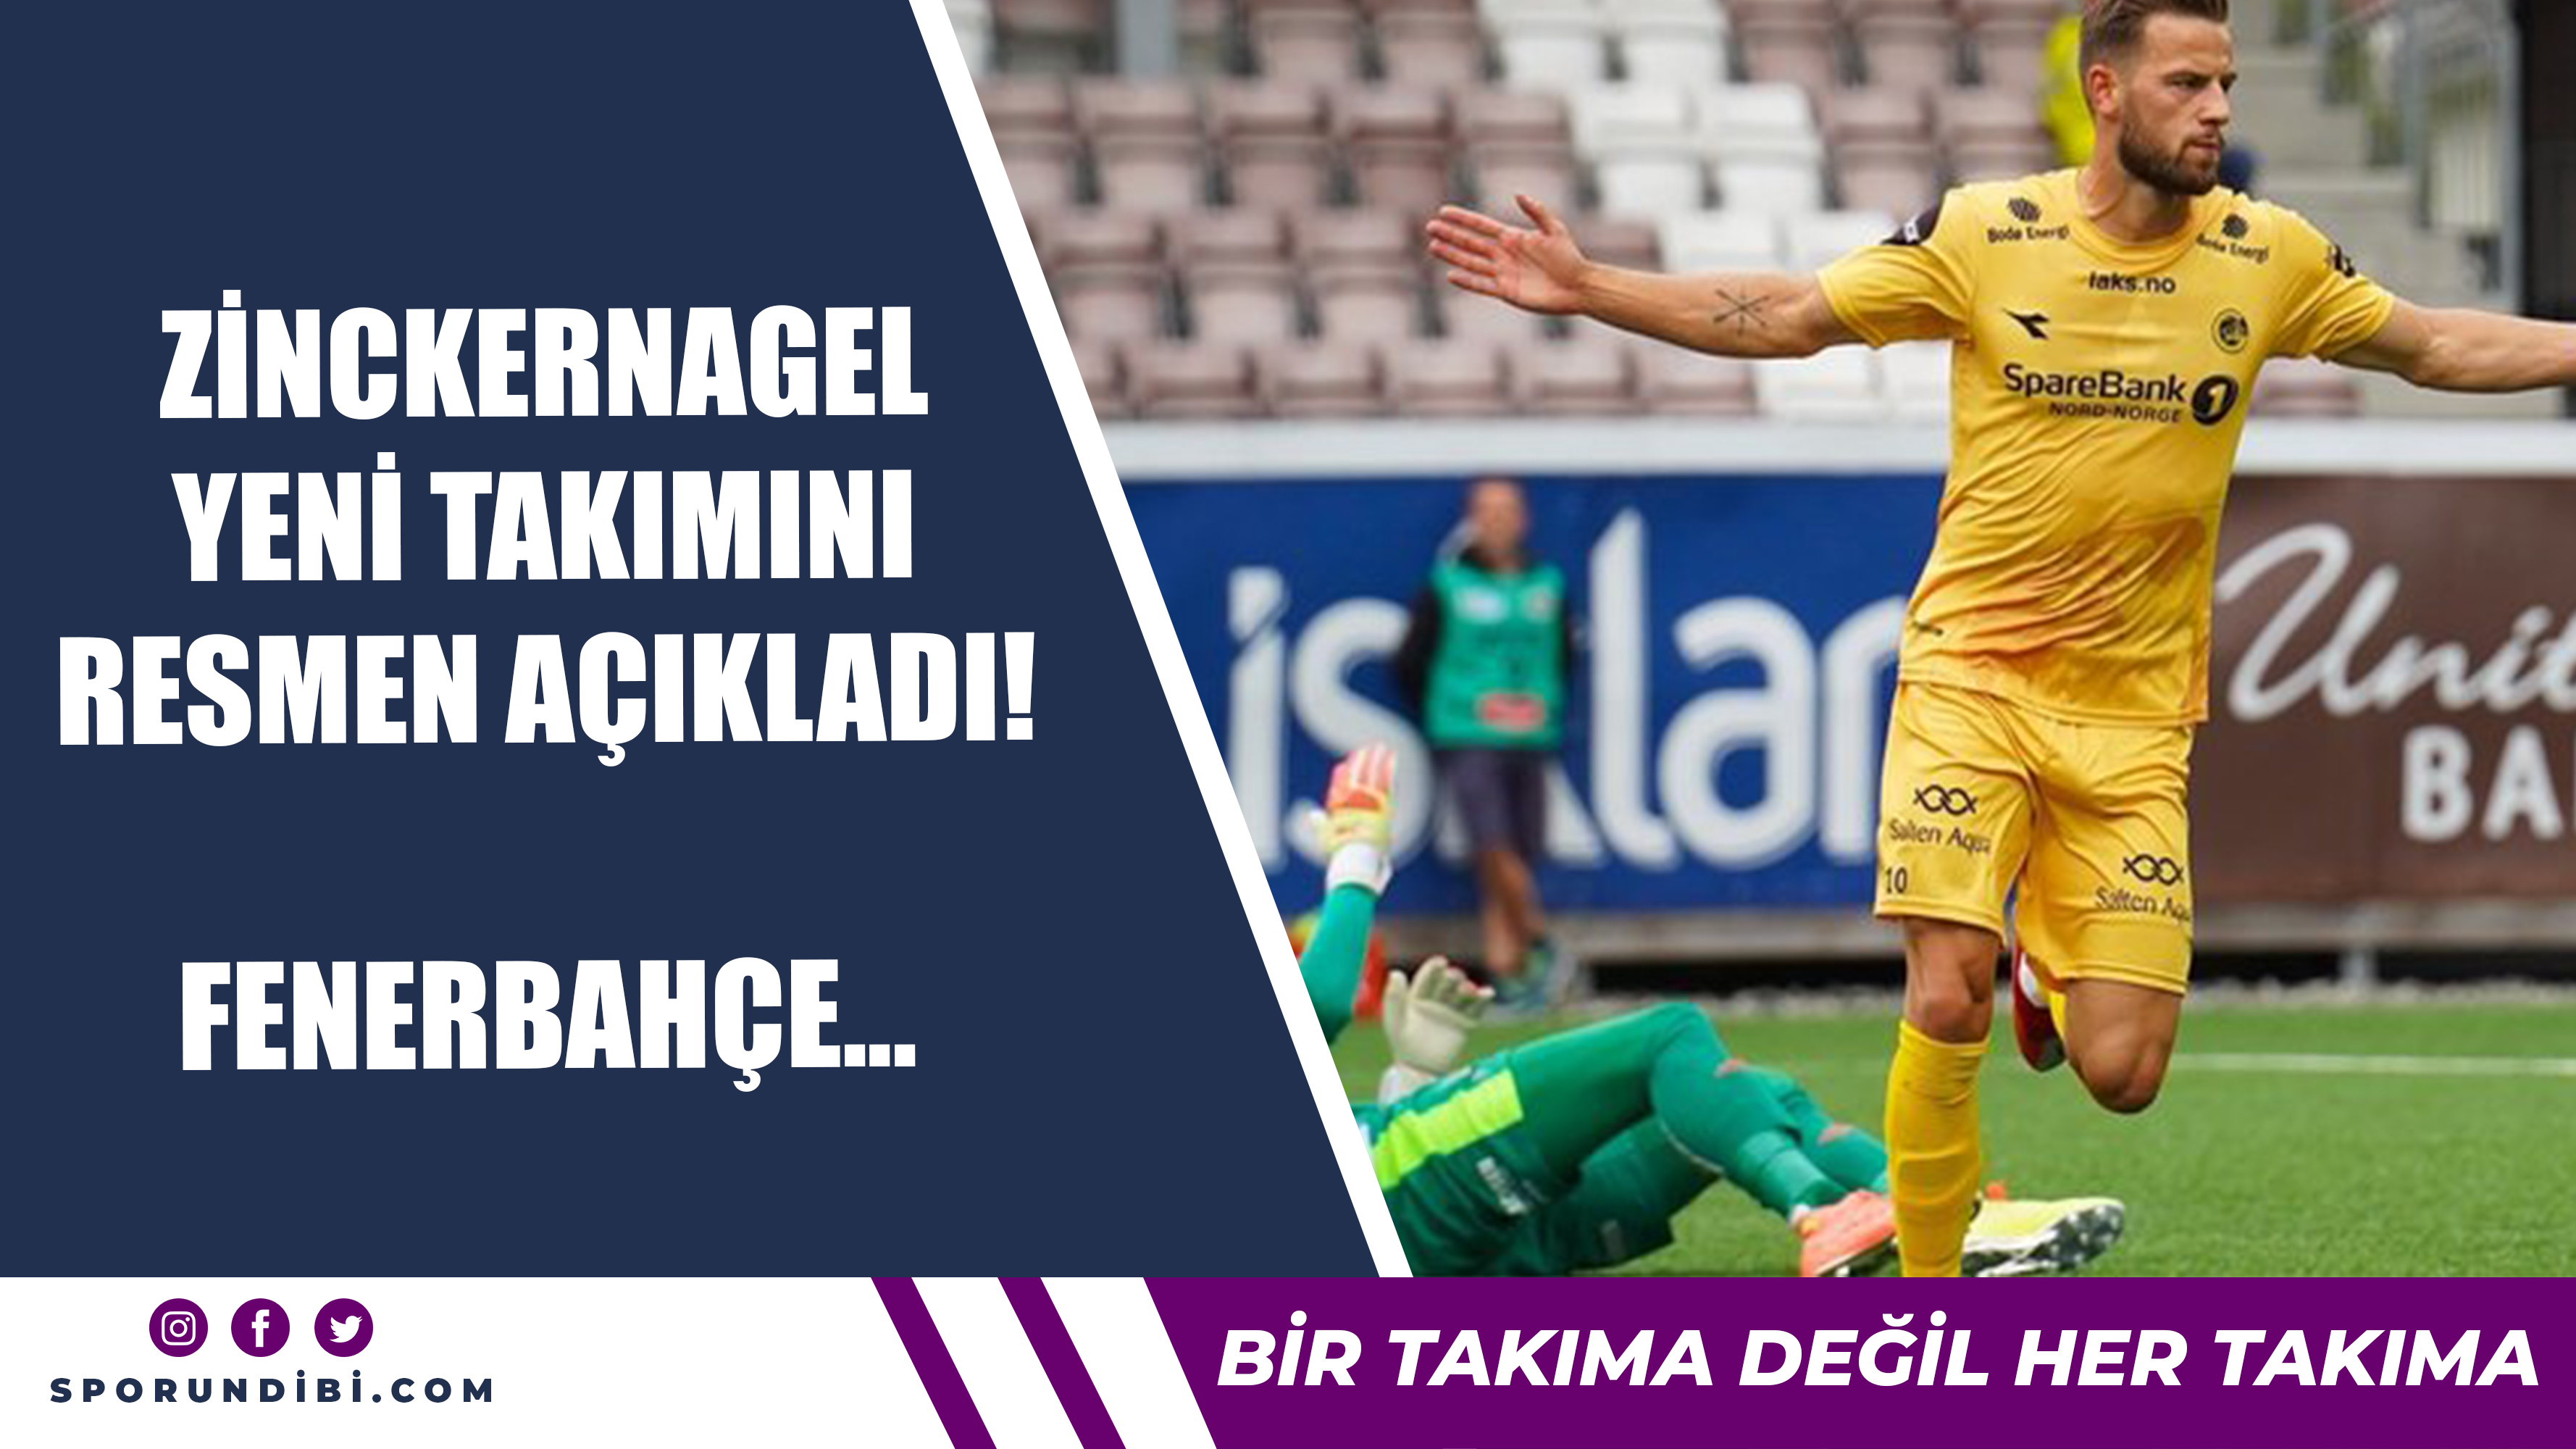 Zinckernagel yeni takımını resmen açıkladı! Fenerbahçe...